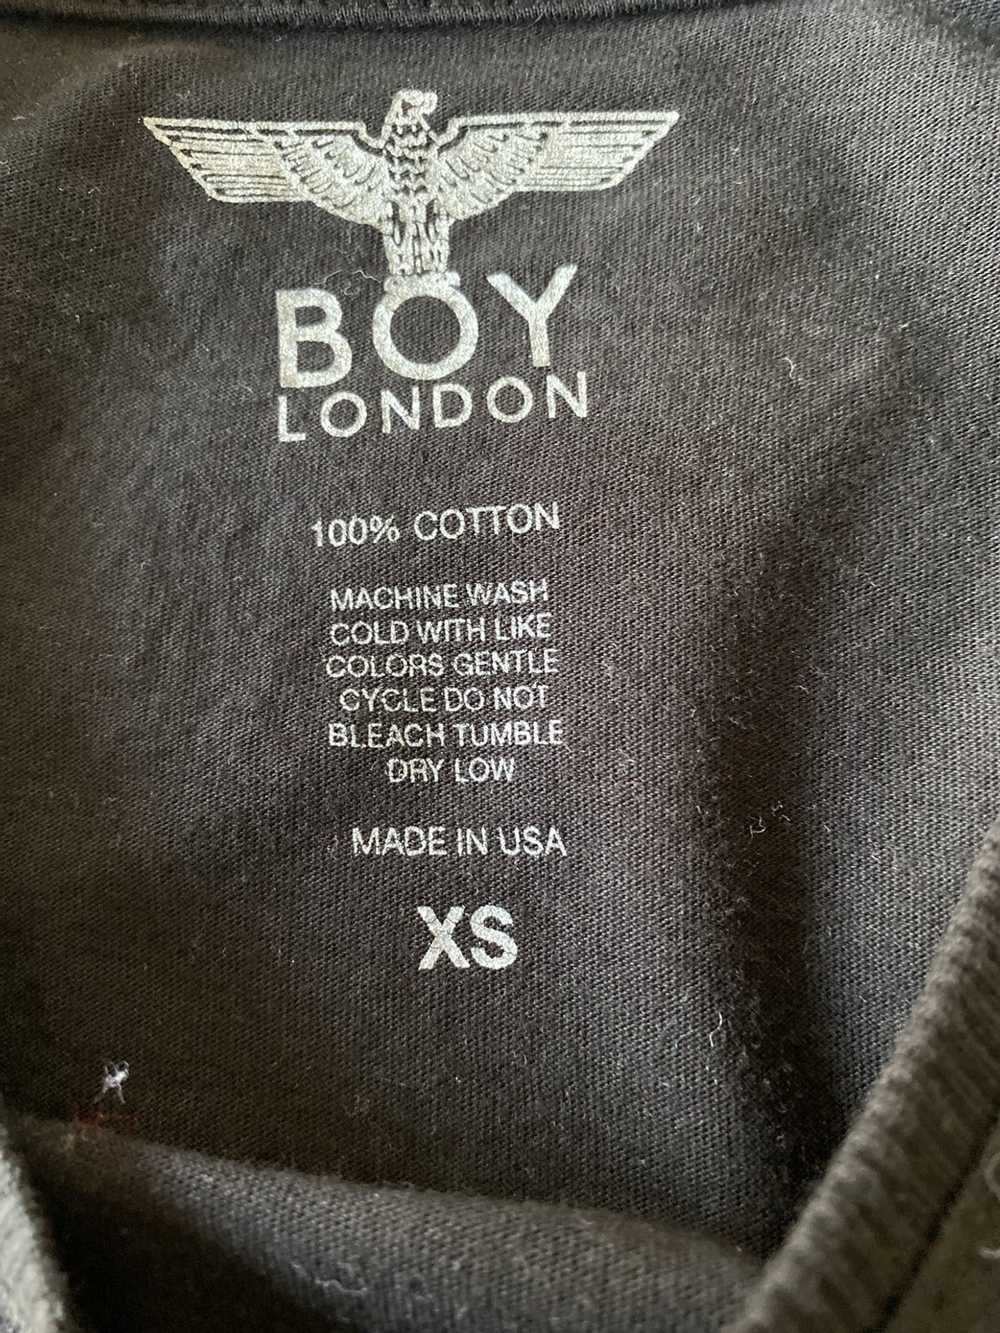 Boy London Boy London Cotton T shirt - image 3